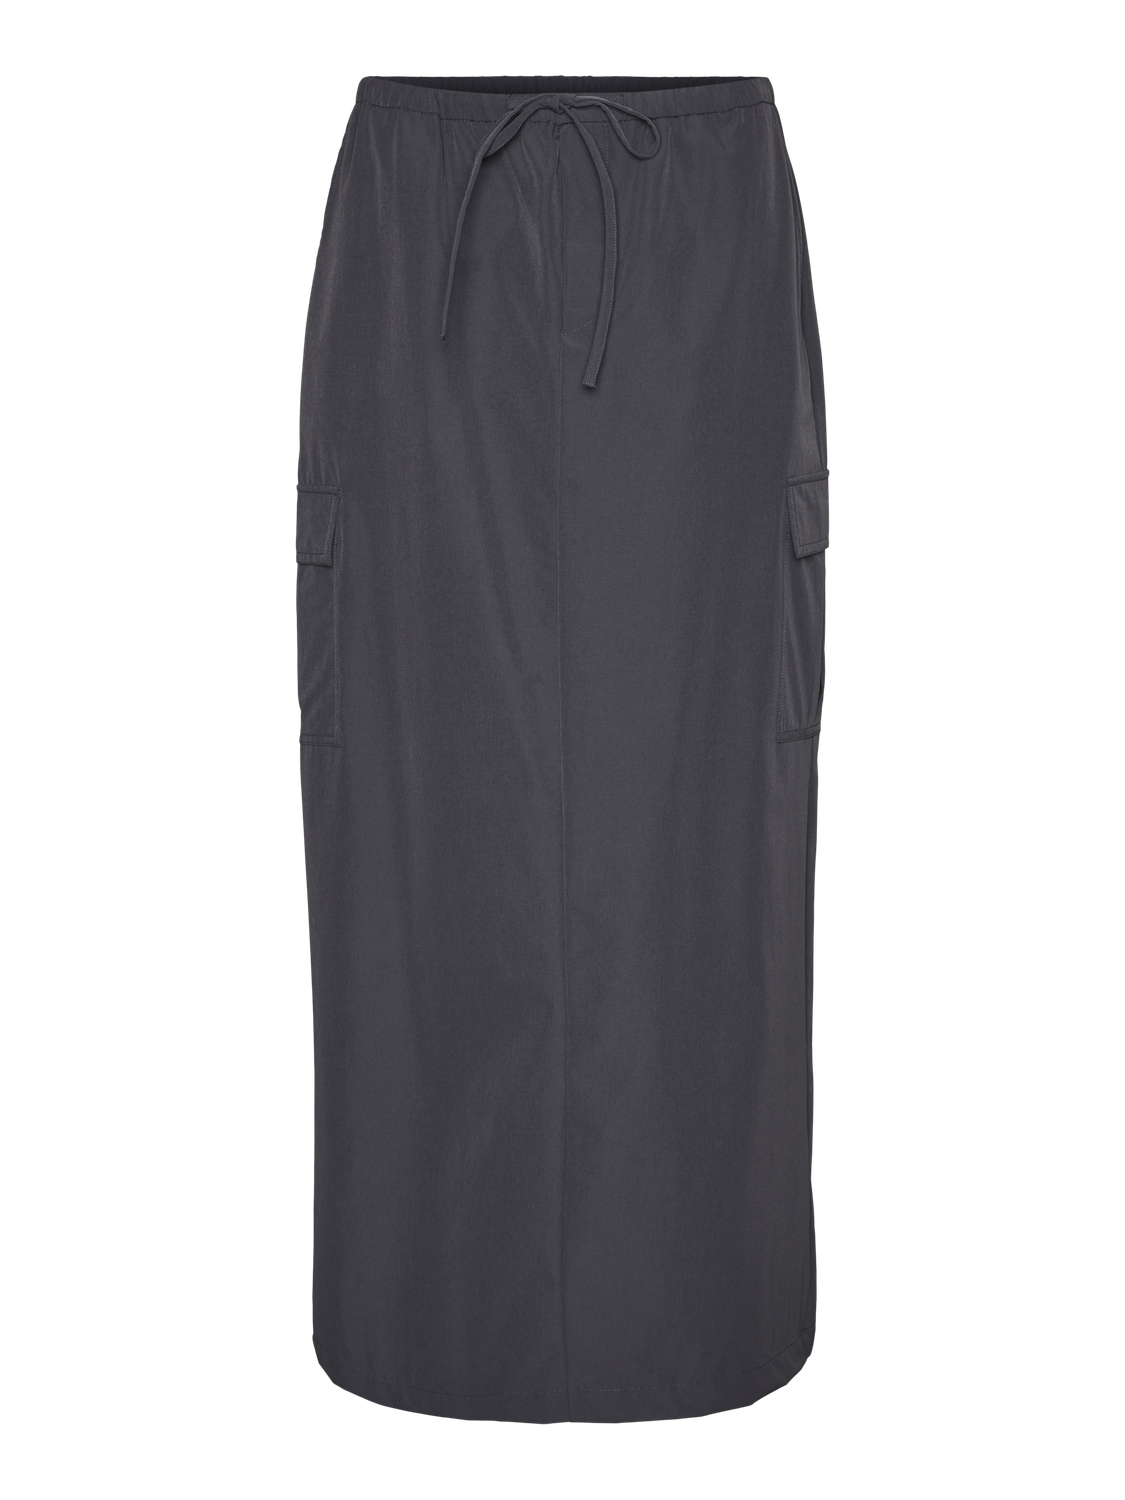 Vero Moda VMKIMBERLY Long skirt -Asphalt - 10316122